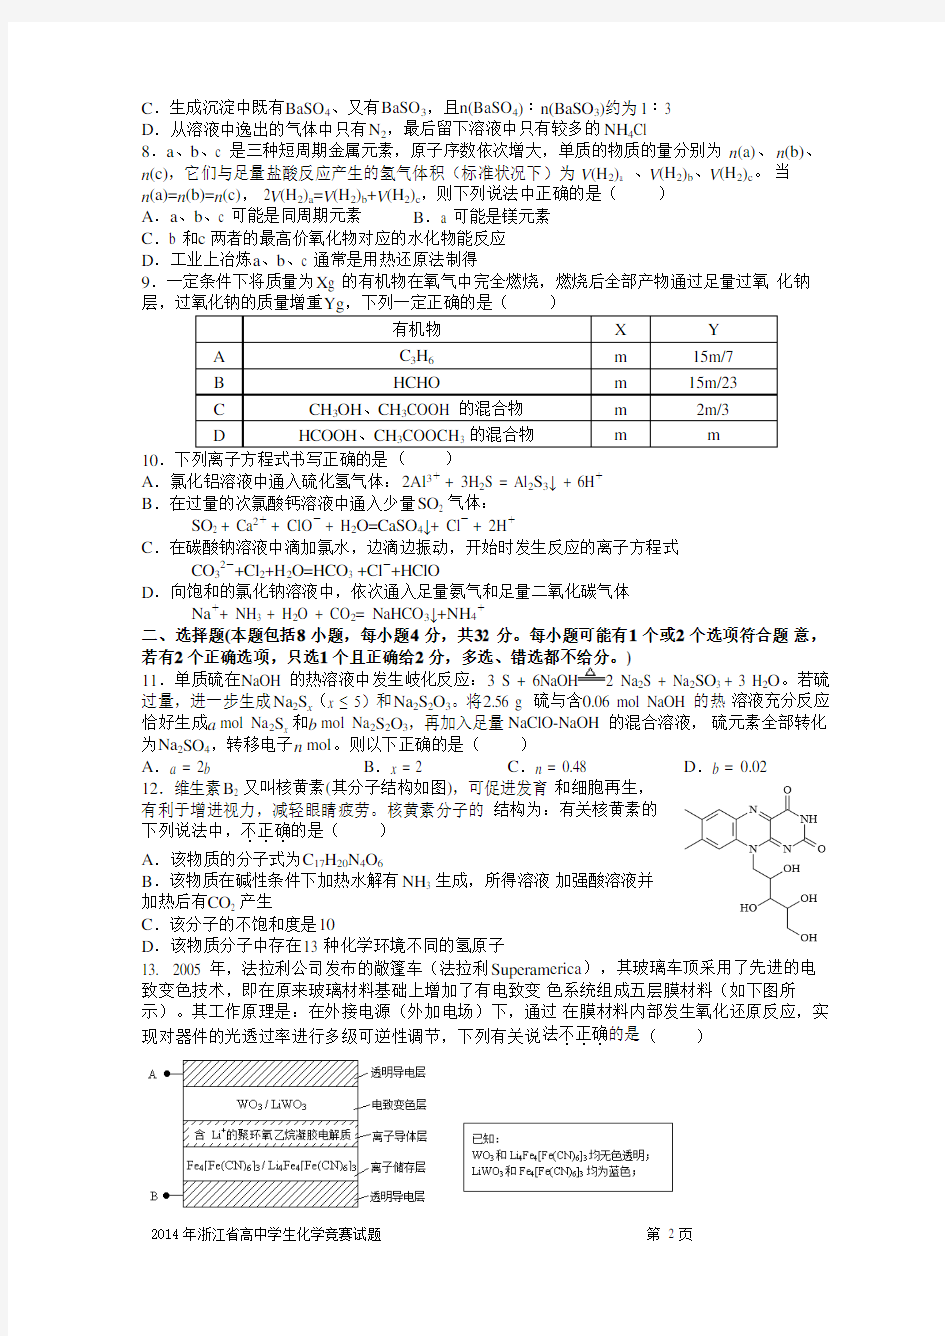 2014年浙江省高中学生化学竞赛预赛试题精校word版含答案